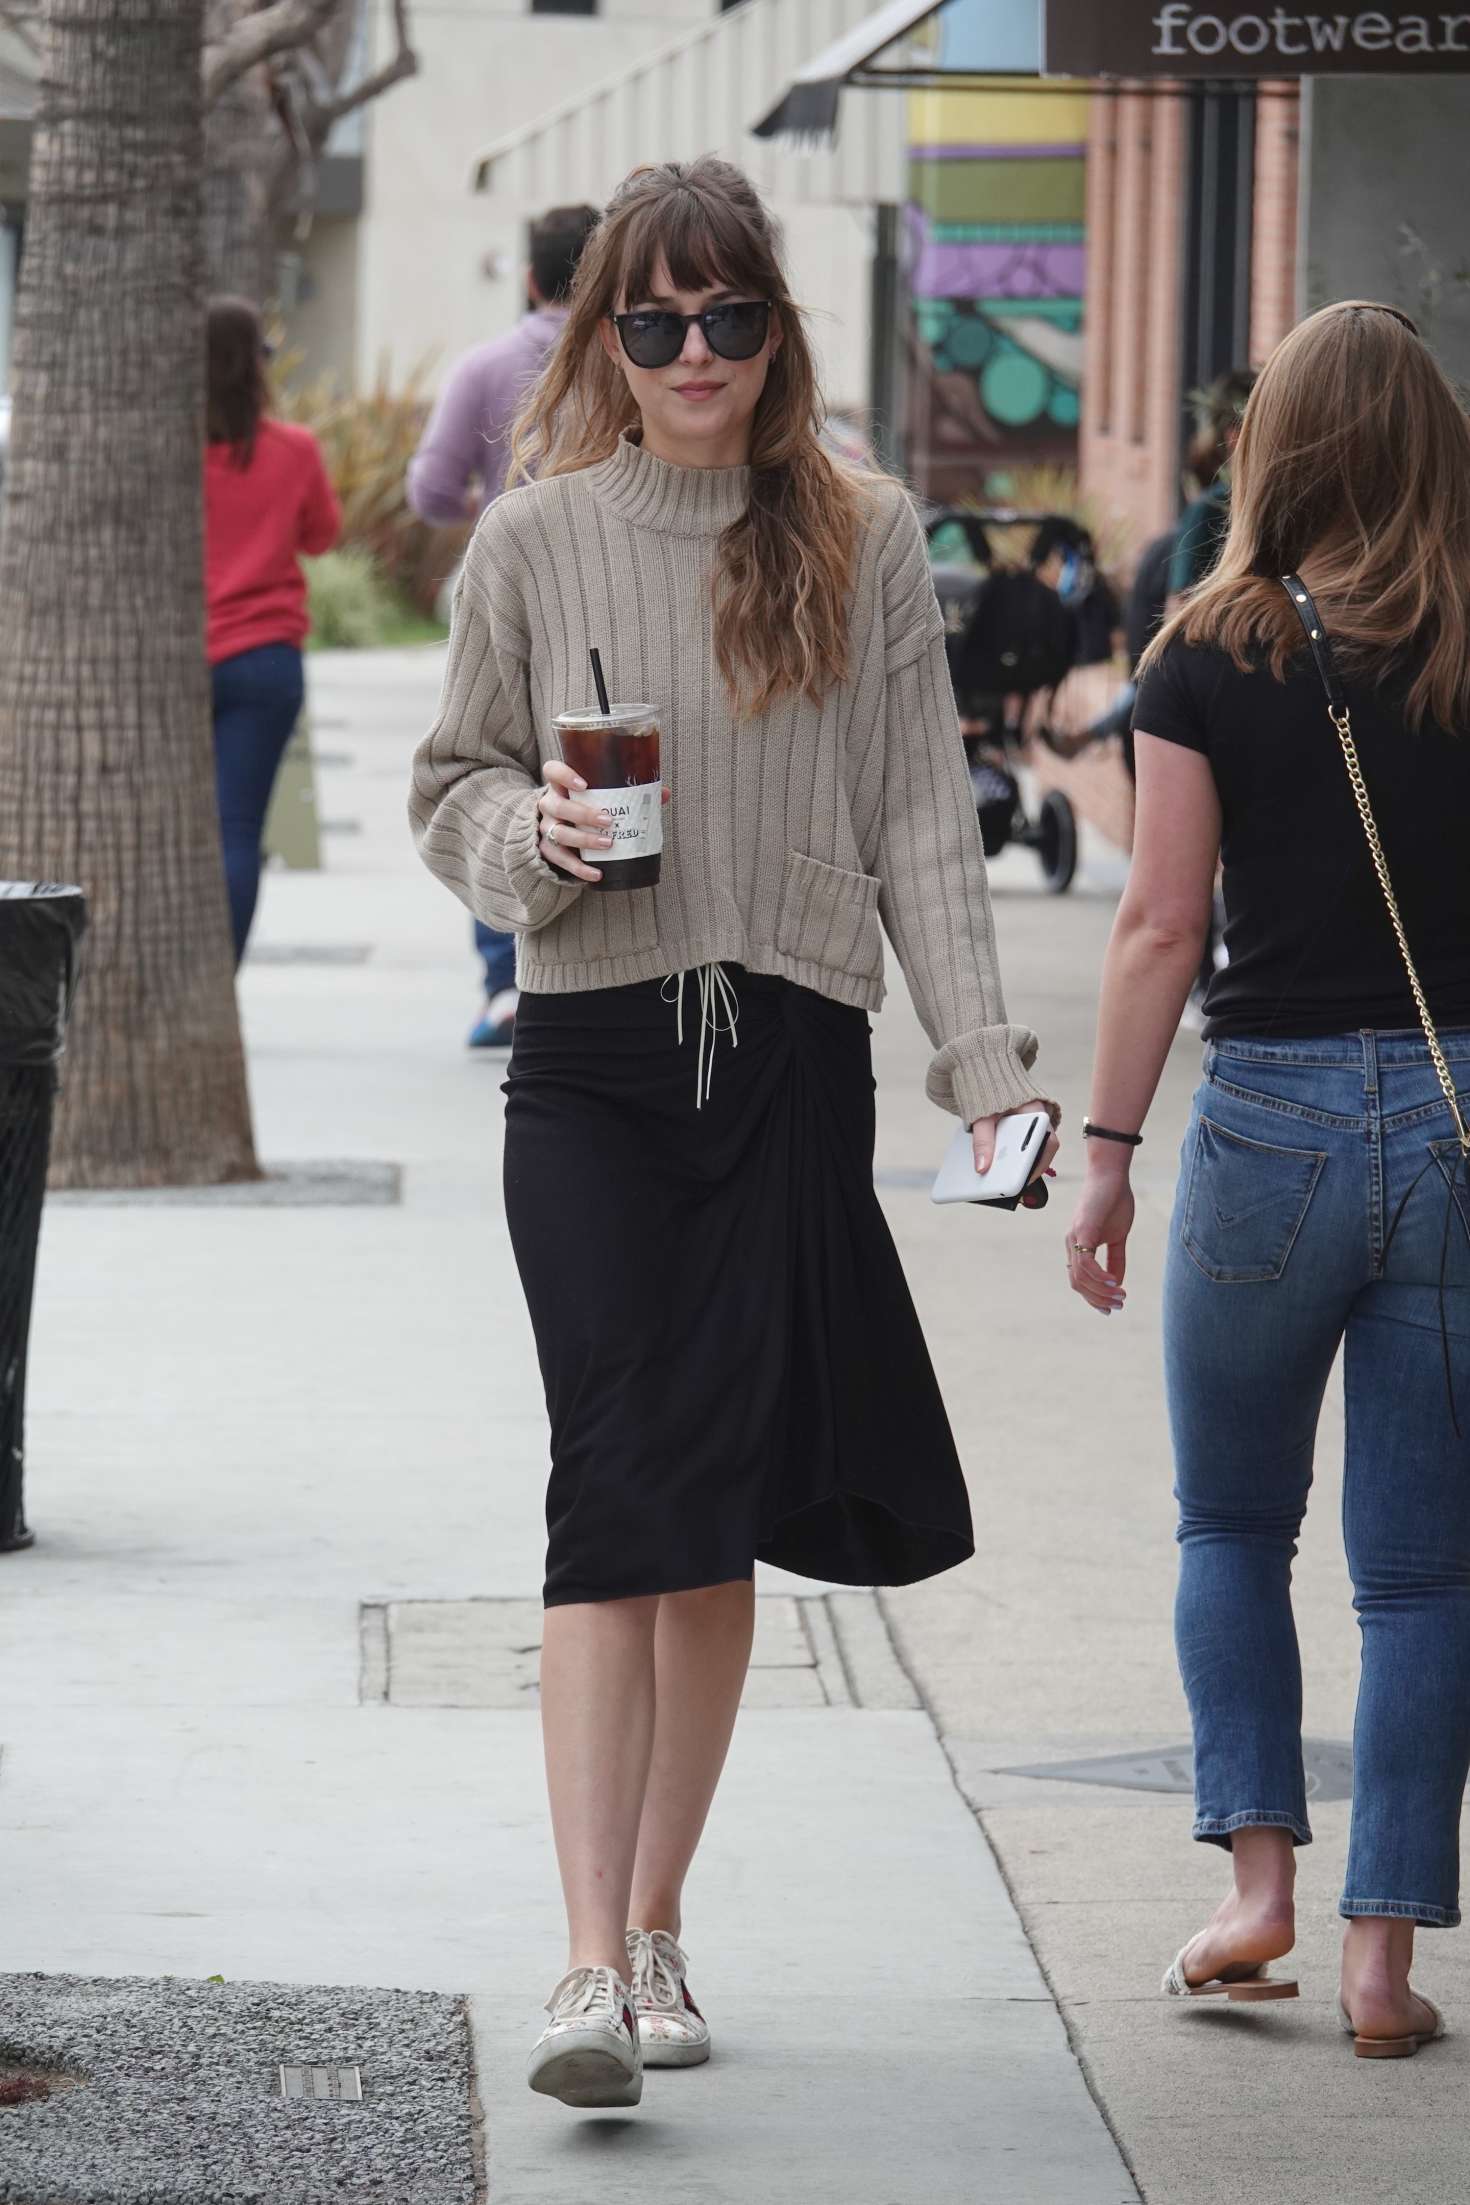 Dakota Johnson in Black Skirt out in Los Angeles